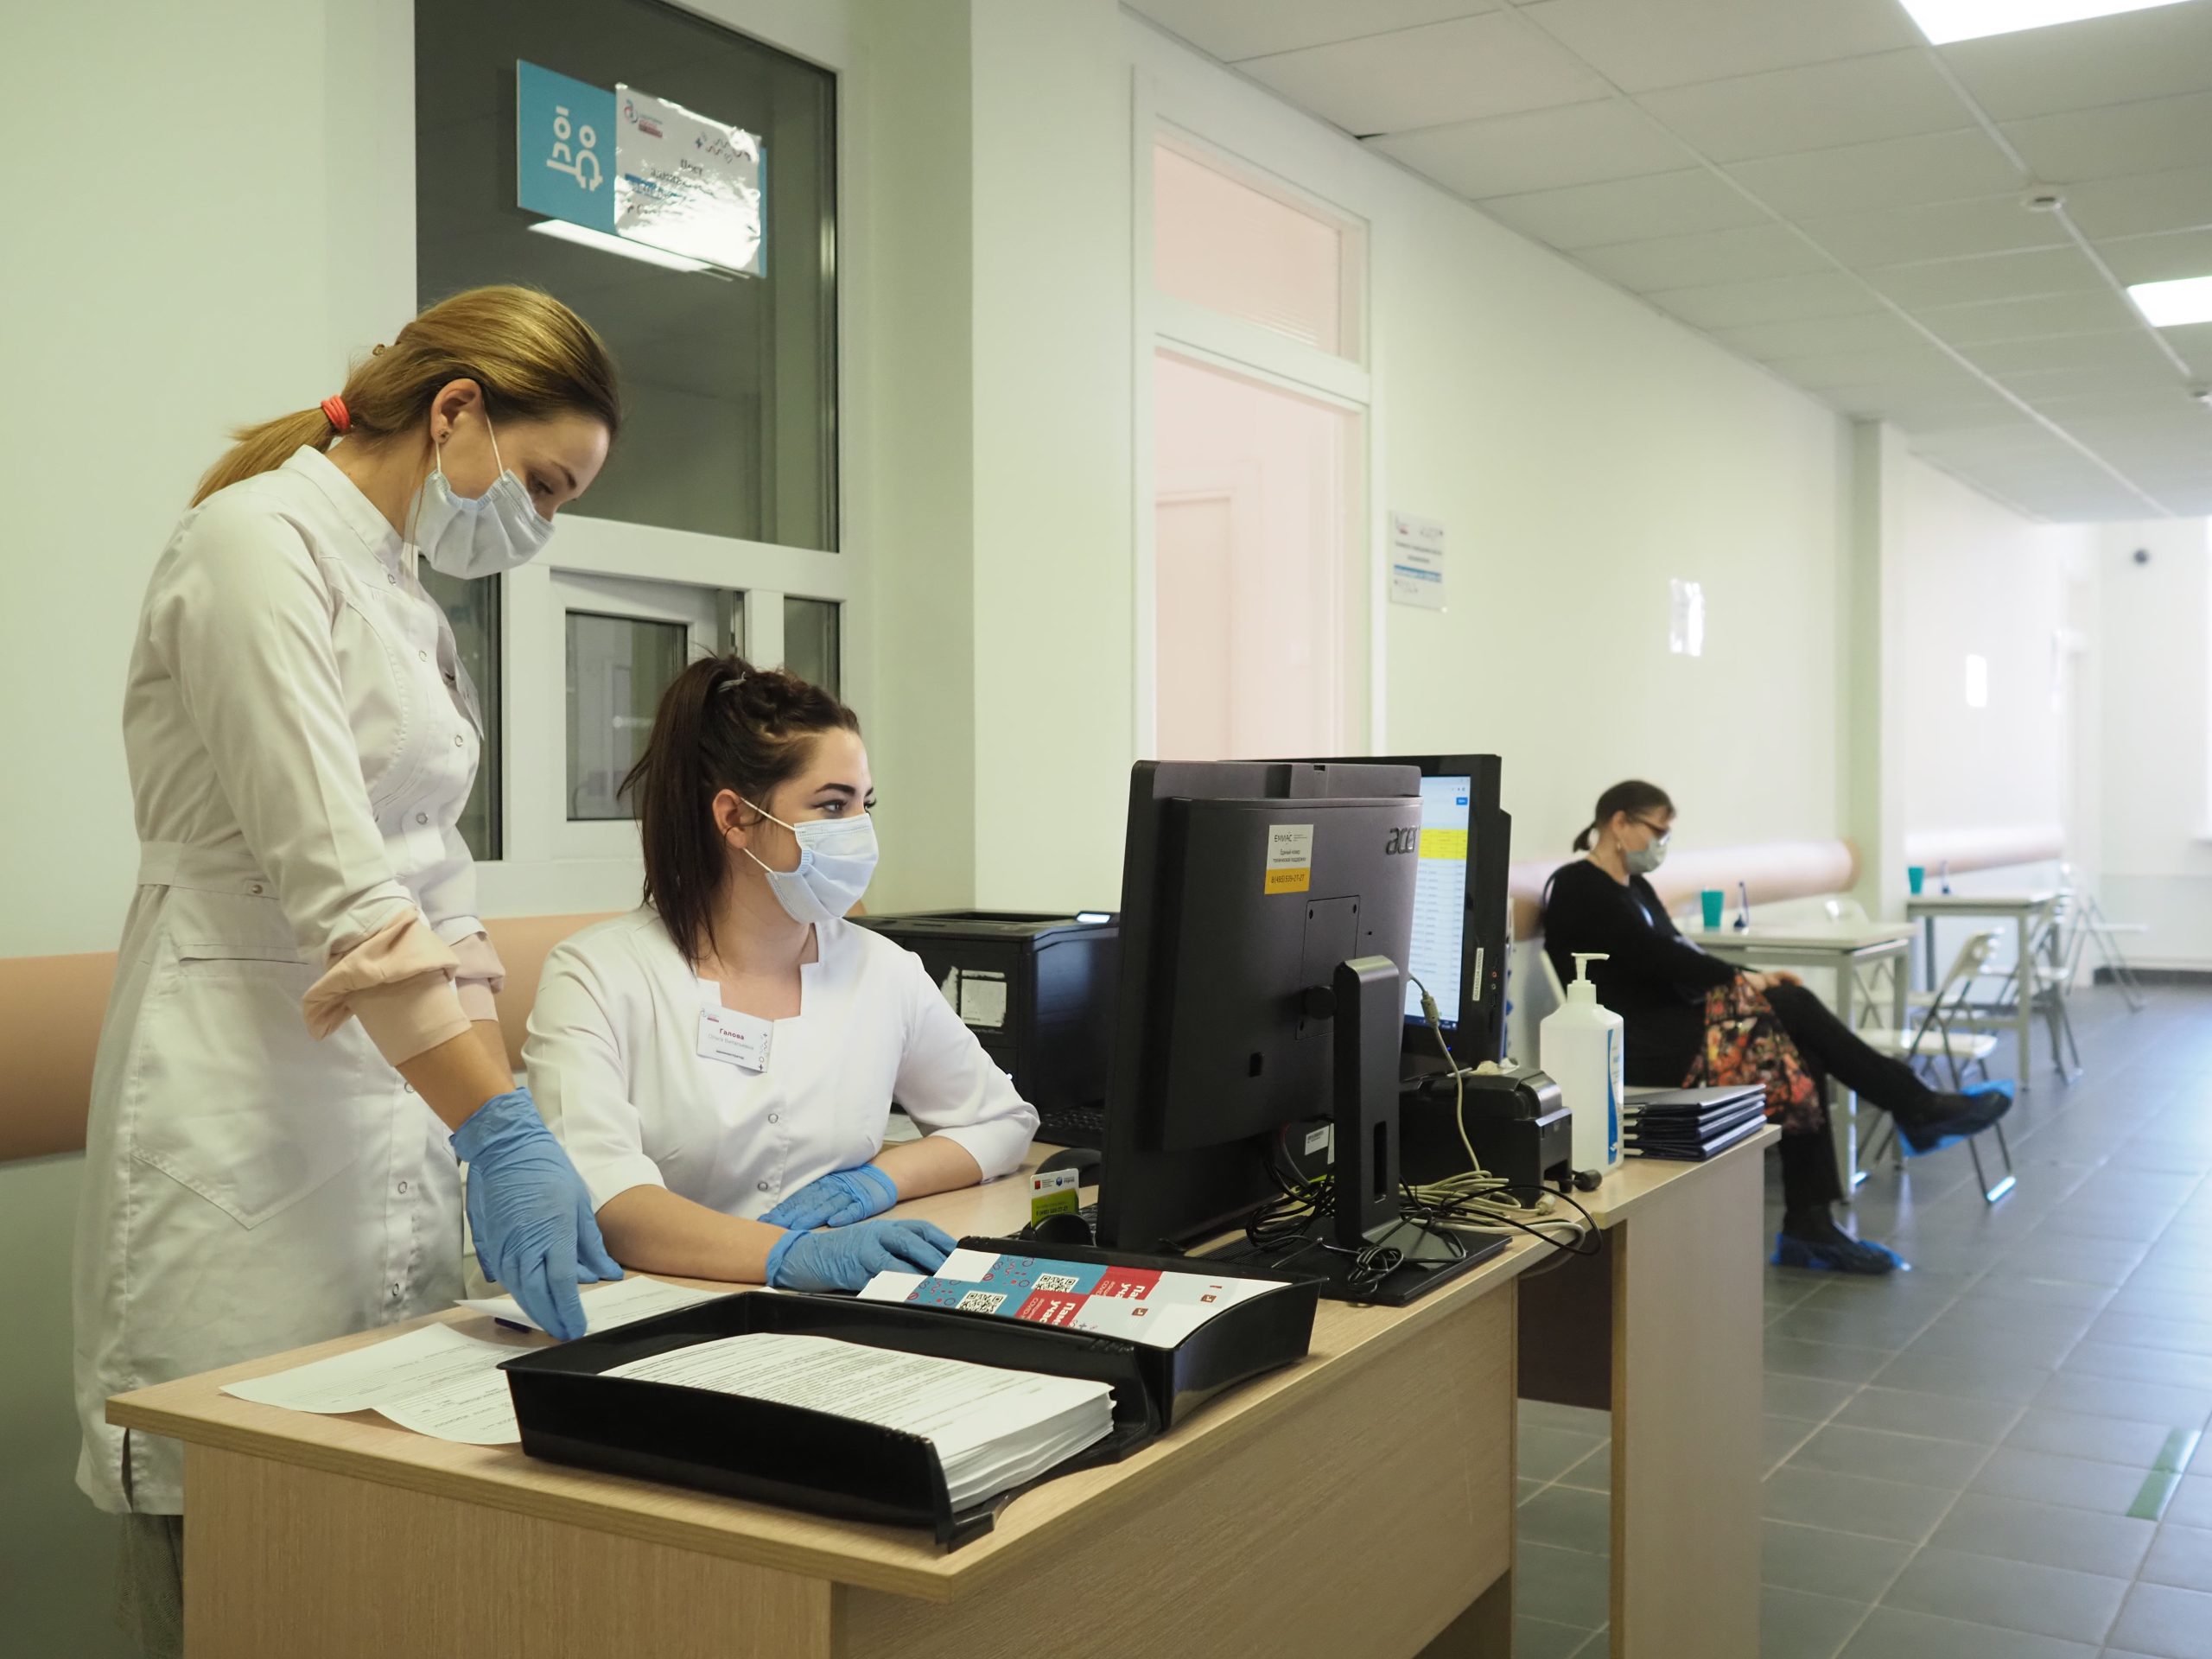 Обучение медсестер для работы в скоропомощных комплексах началось в Москве